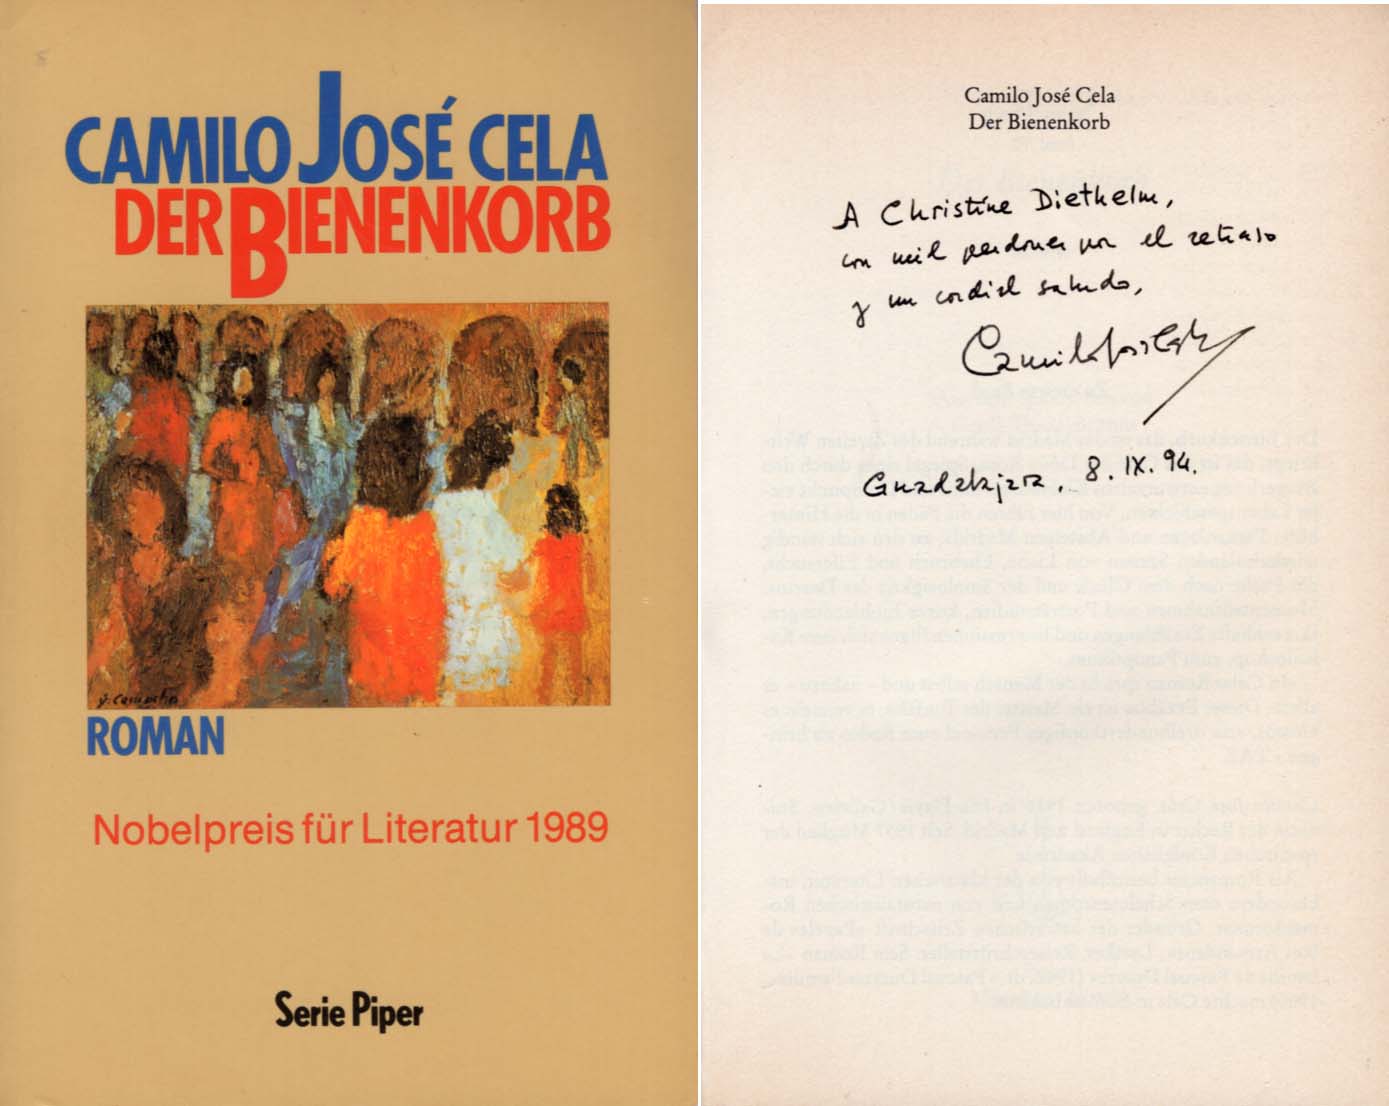 Camilo Jose Cela Autograph Autogramm | ID 7808884080789